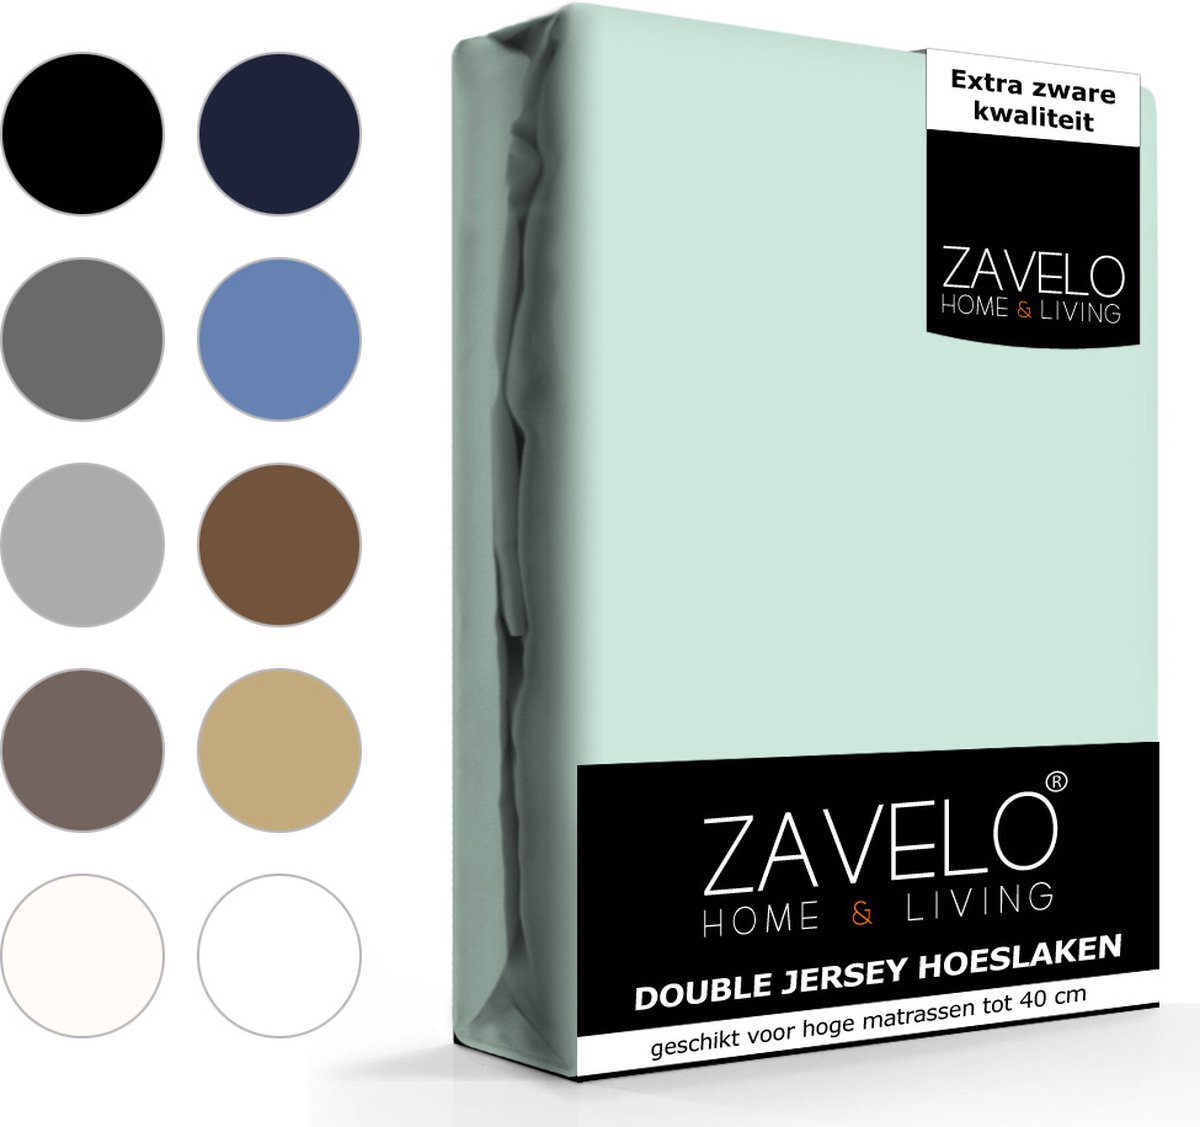 Slaaptextiel Zavelo Double Jersey Hoeslaken Pastel-lits-jumeaux (160x200 Cm) - Blauw